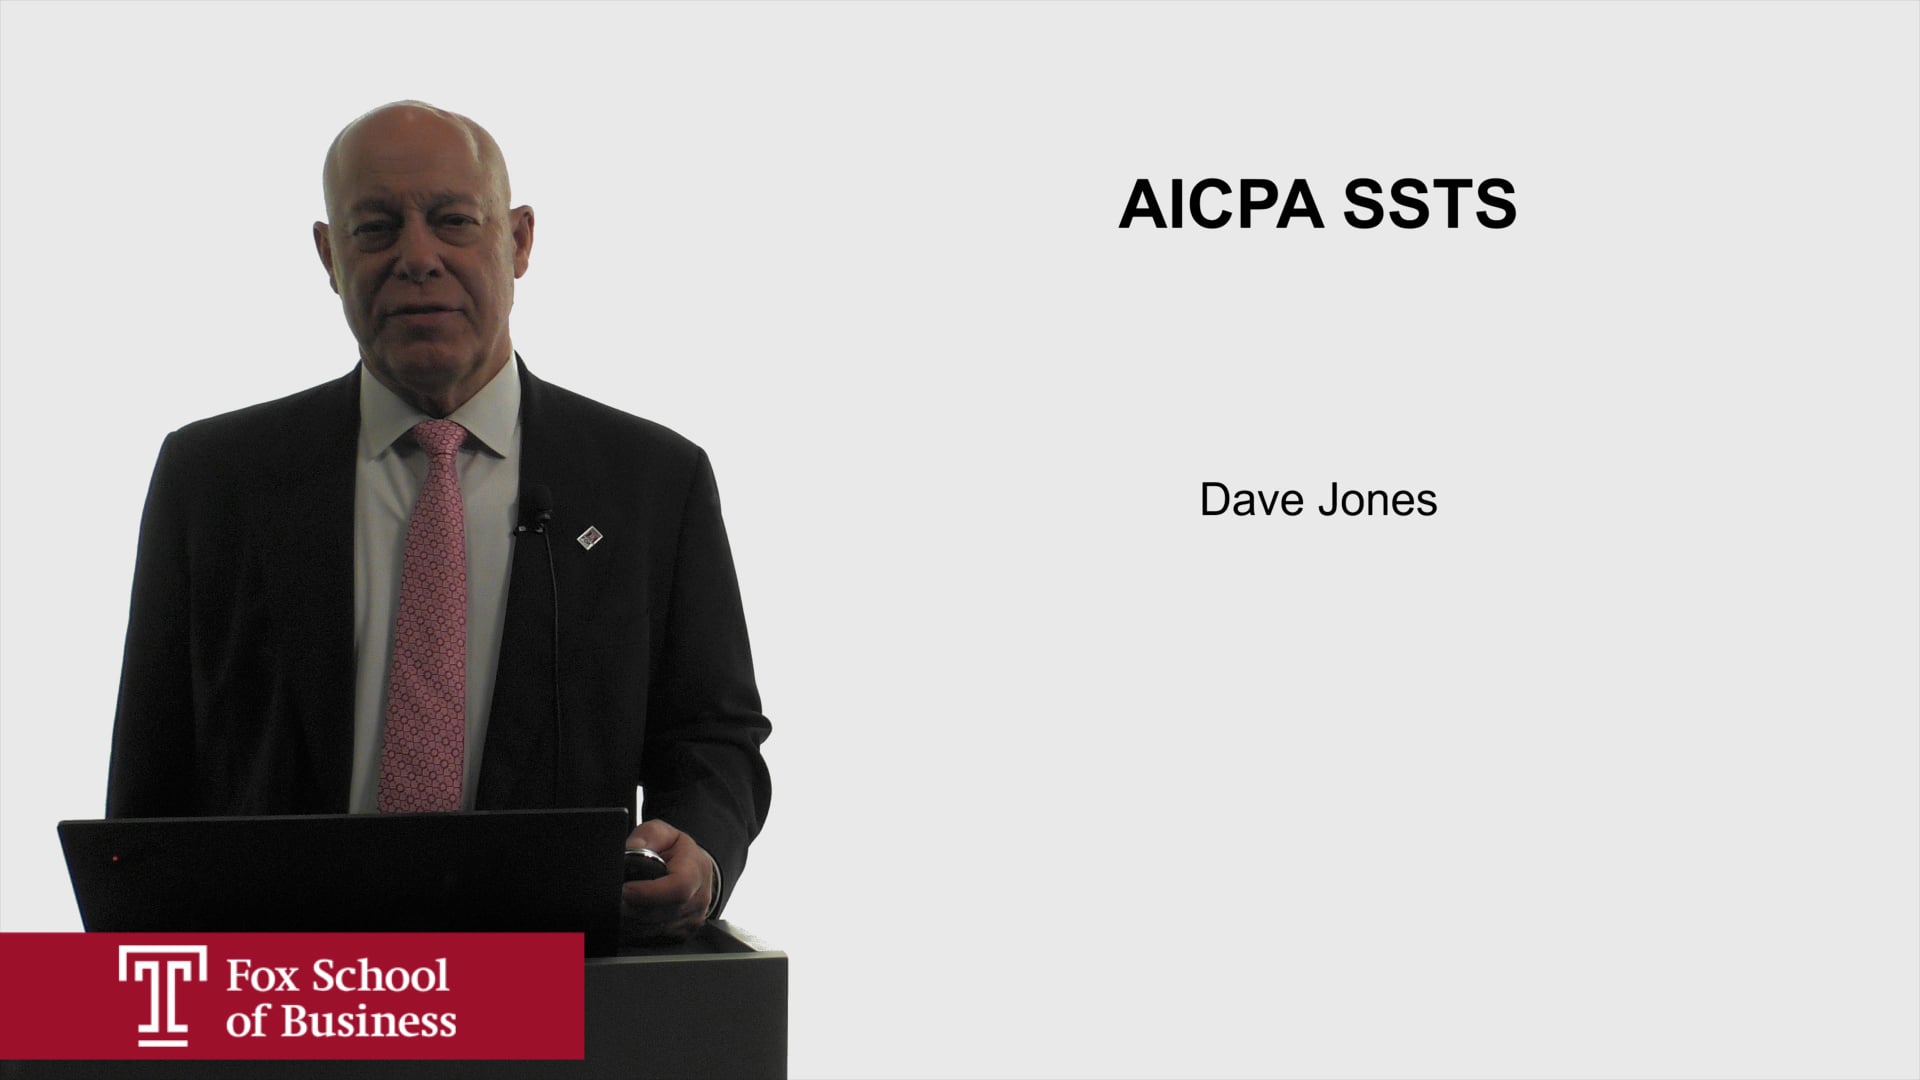 AICPA SSTS Summary